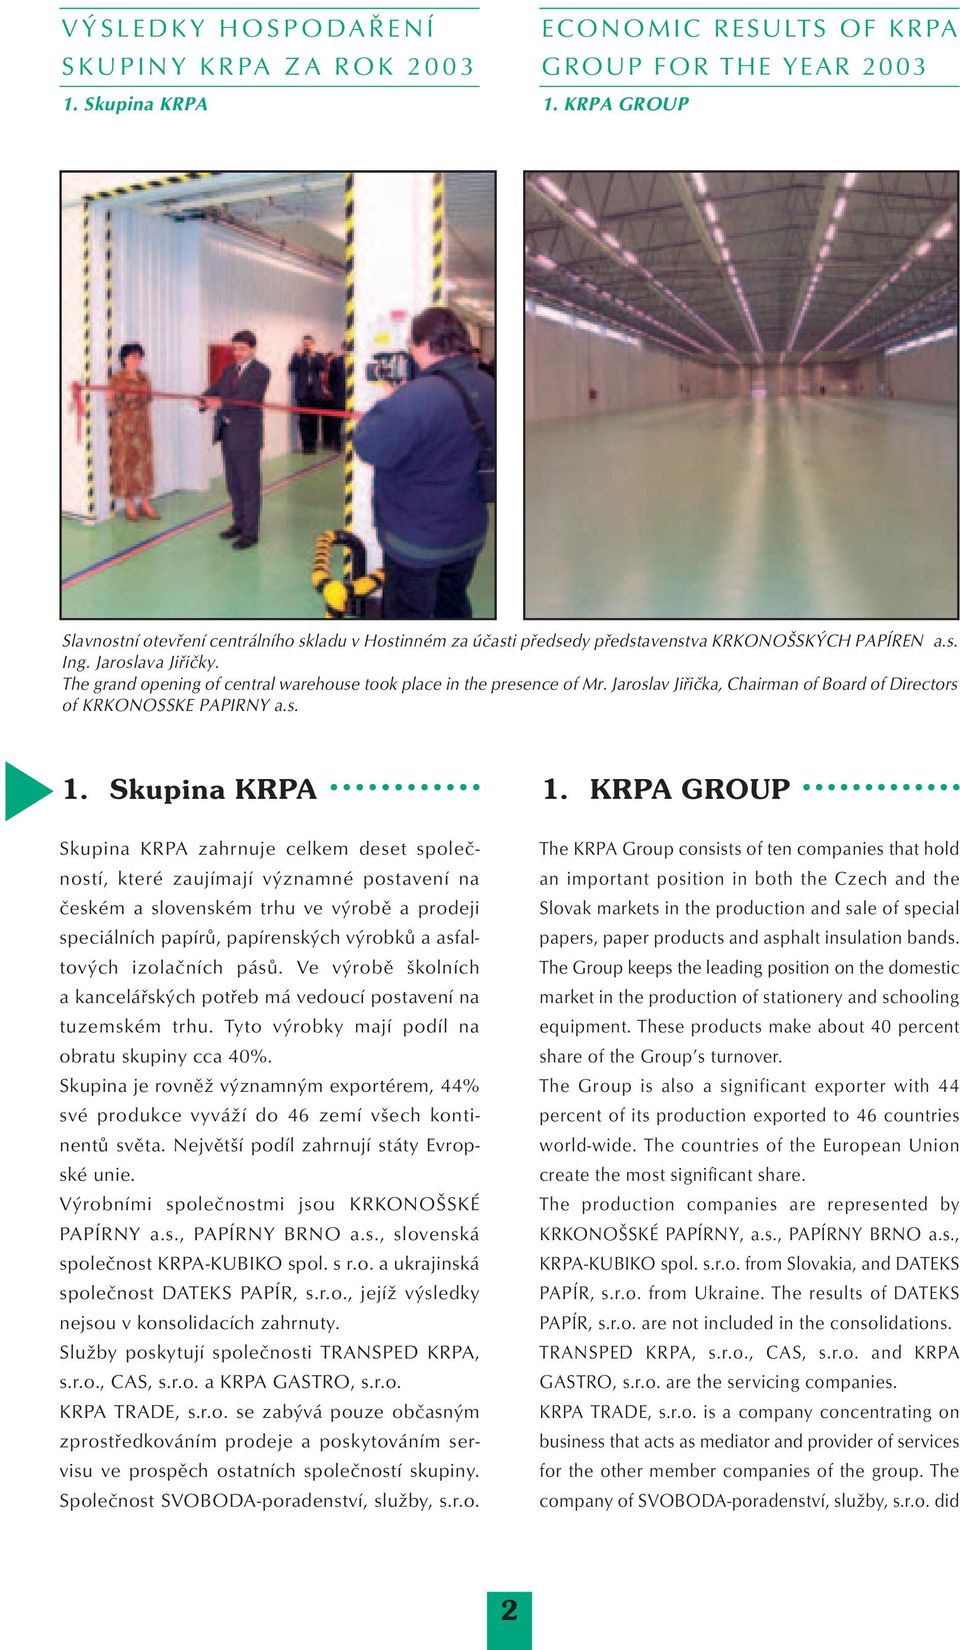 KRPA GROUP Skupina KRPA zahrnuje celkem deset společností, které zaujímají významné postavení na českém a slovenském trhu ve výrobě a prodeji speciálních papírů, papírenských výrobků a asfaltových